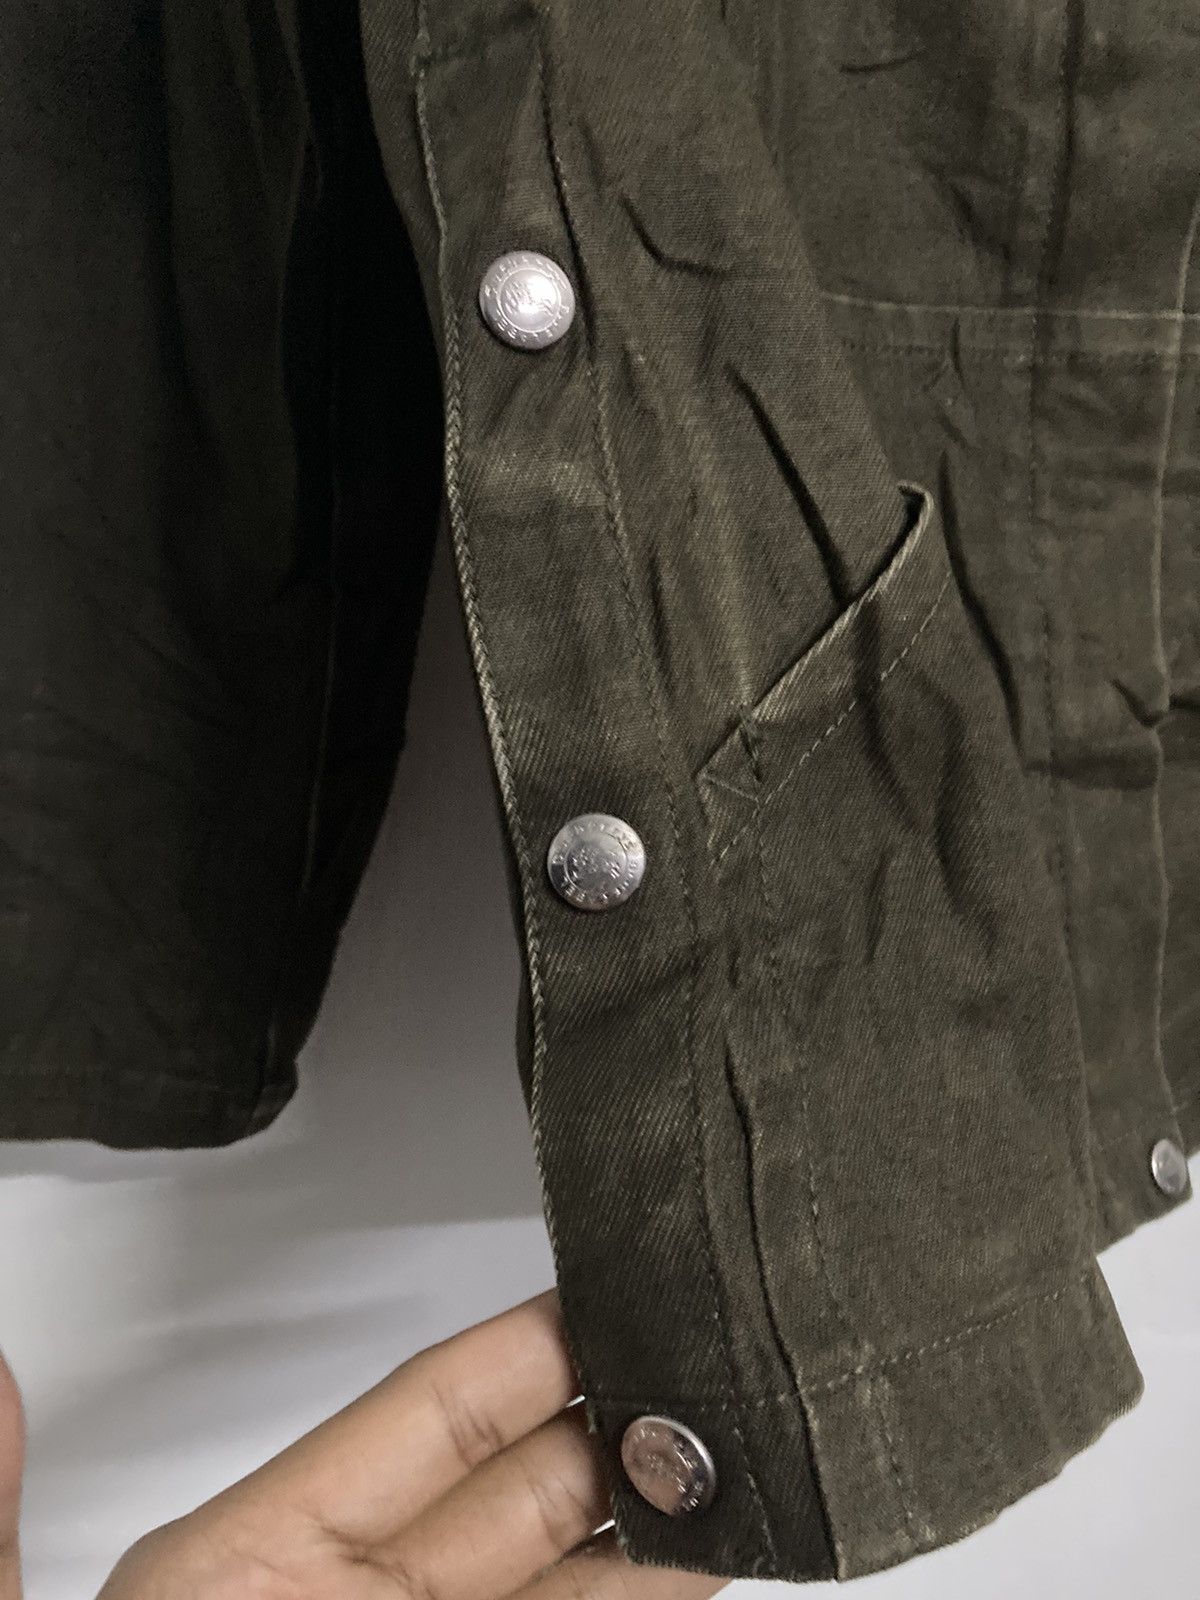 Burberrys Blue Label Hooded Jacket in Size 38 - 9